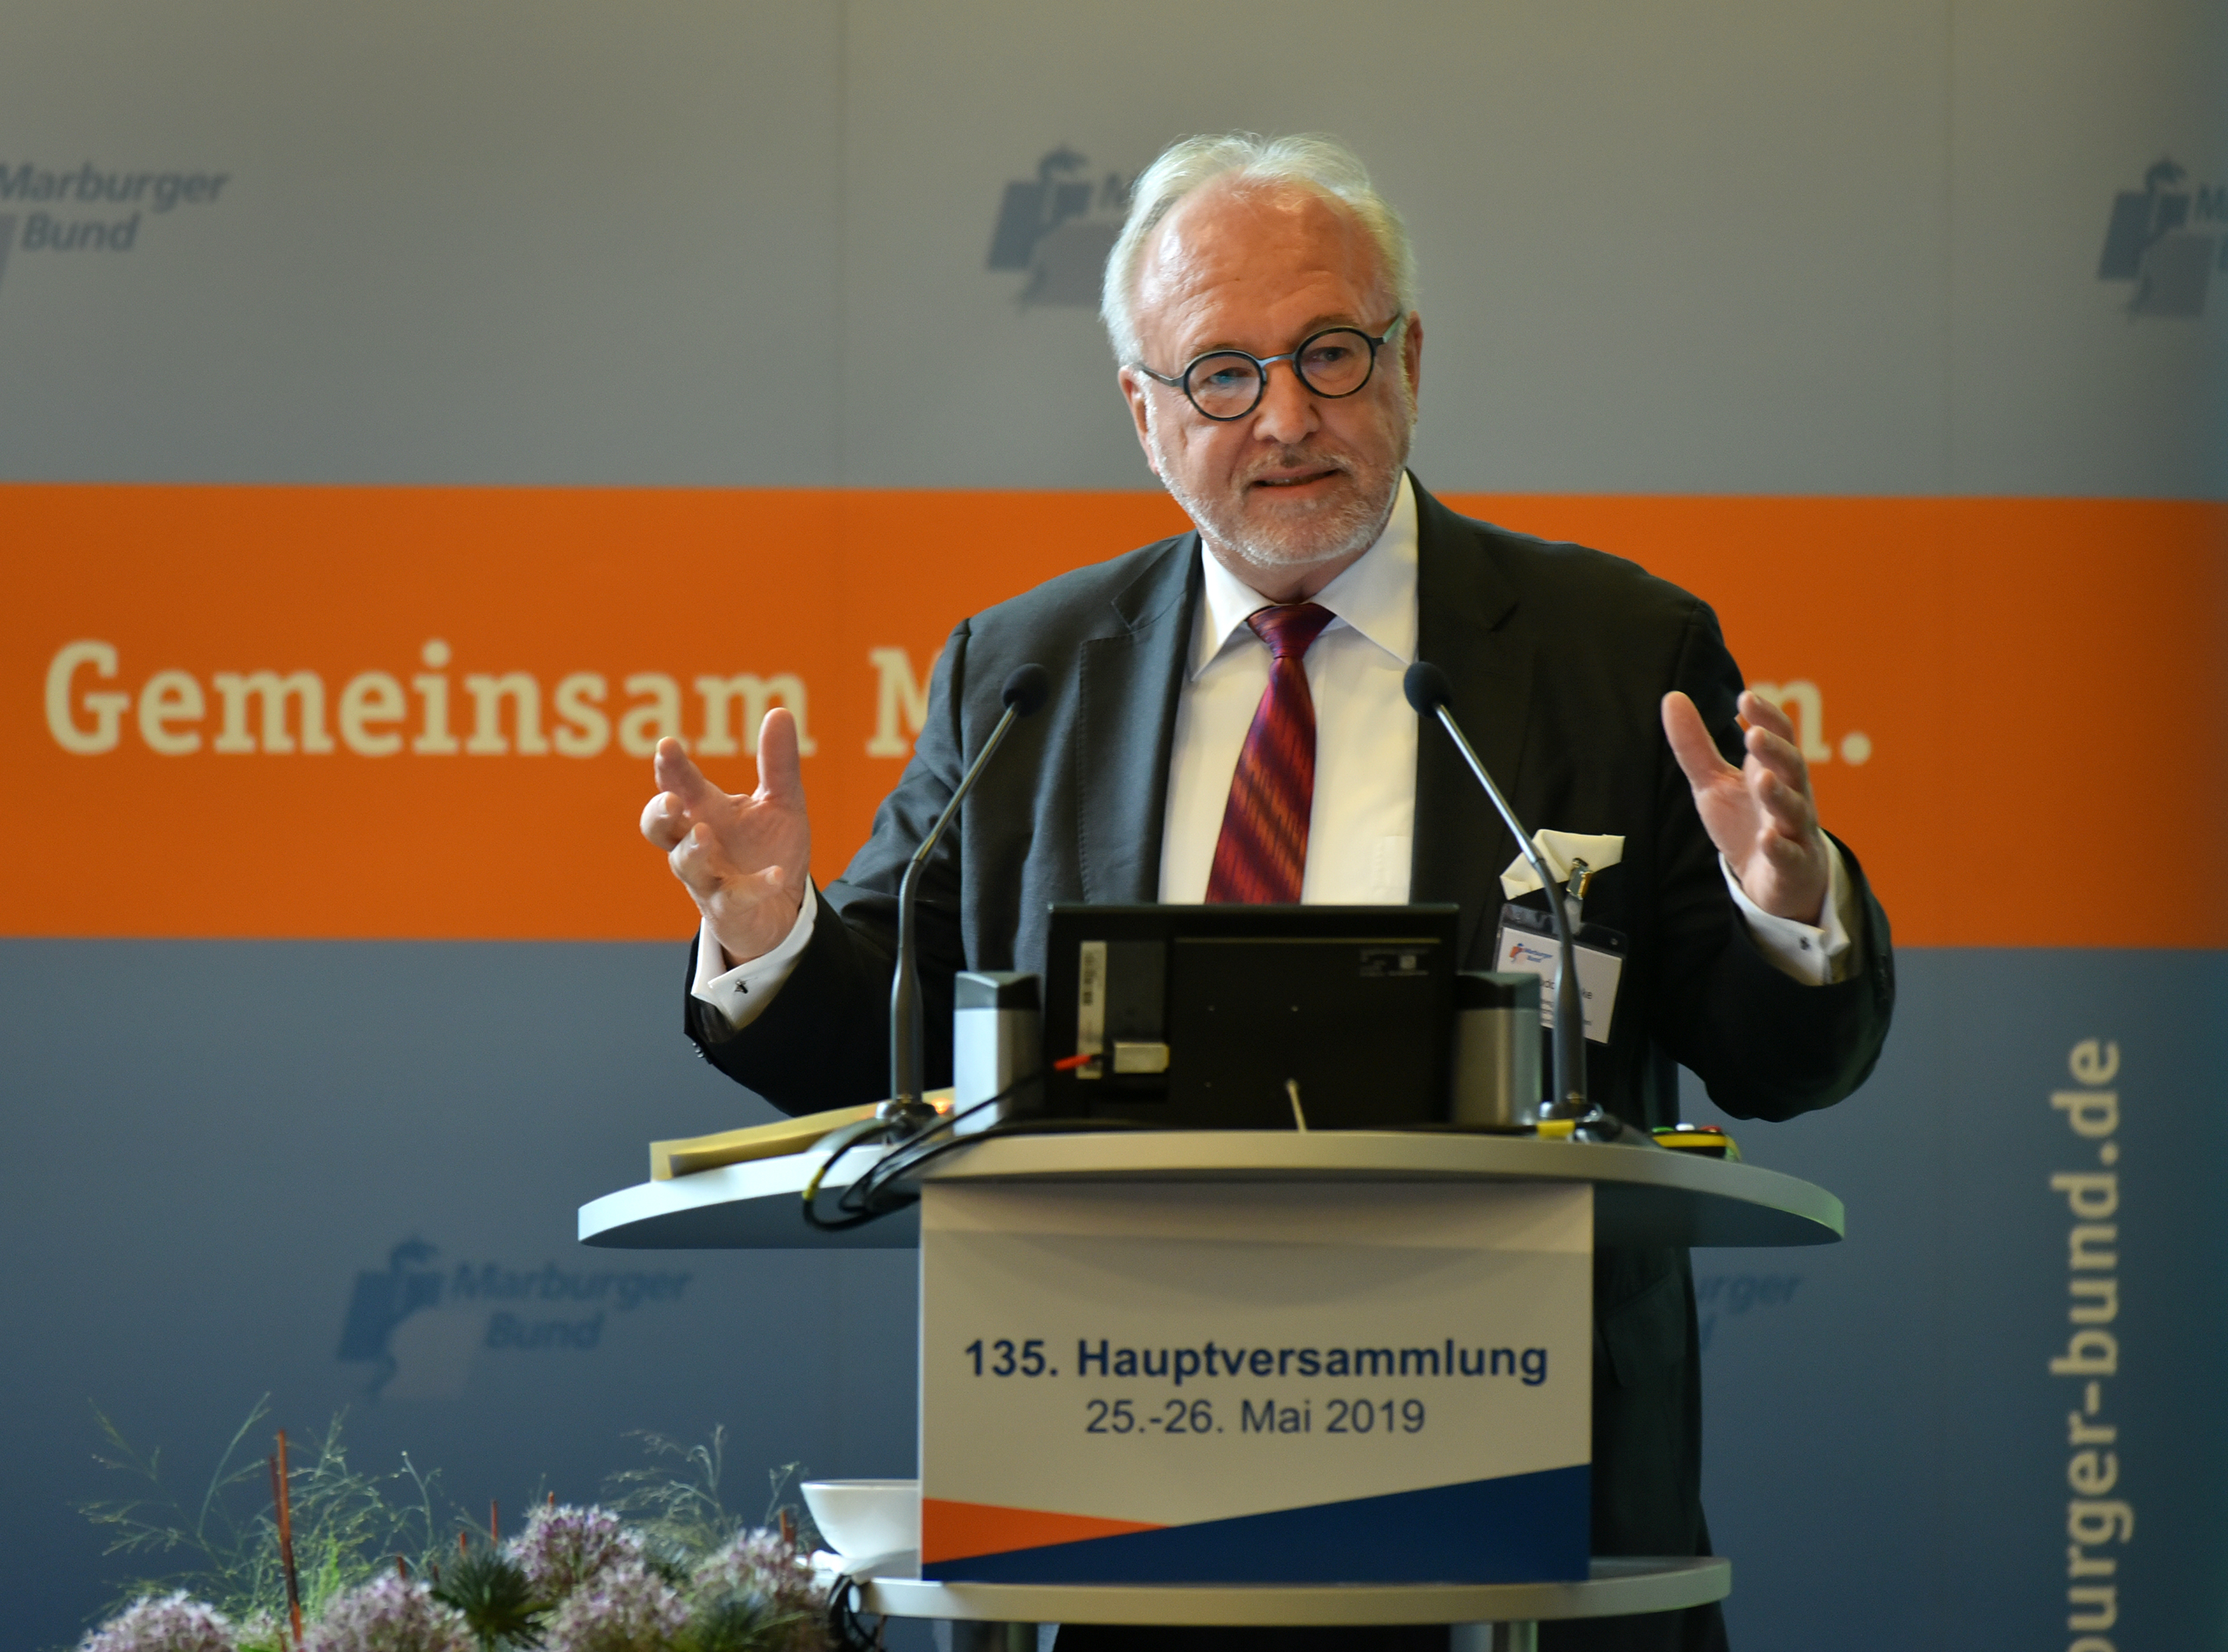 Rudolf Henke, 1. Vorsitzender des Marburger Bundes, Foto: Marburger Bund